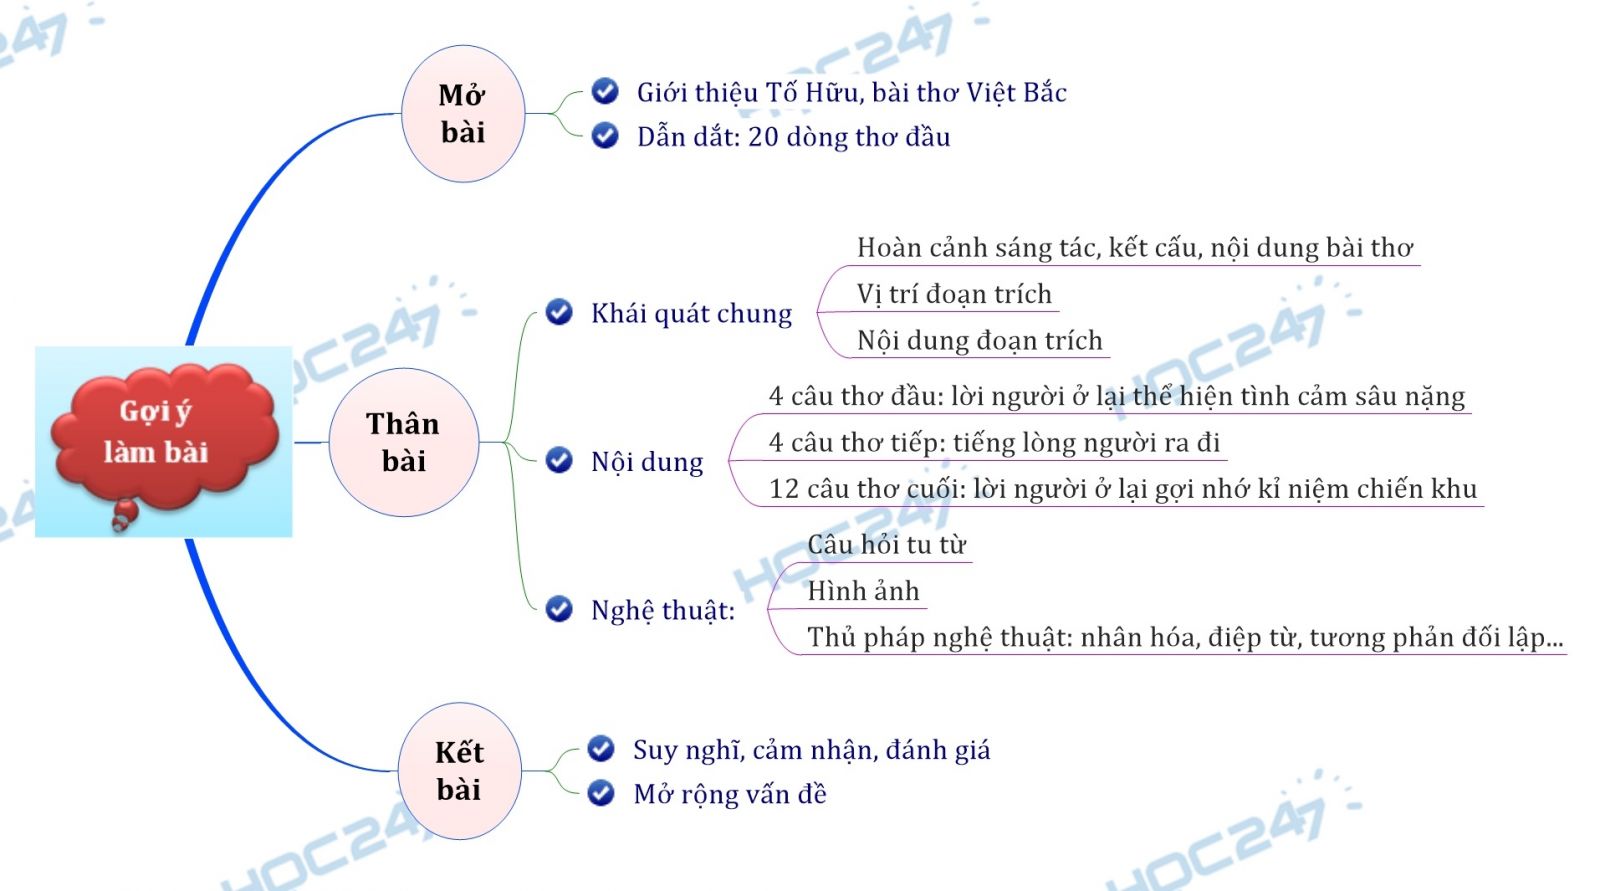 Sơ đồ tư duy - Cảm nhận 20 câu thơ đầu bài thơ Việt Bắc